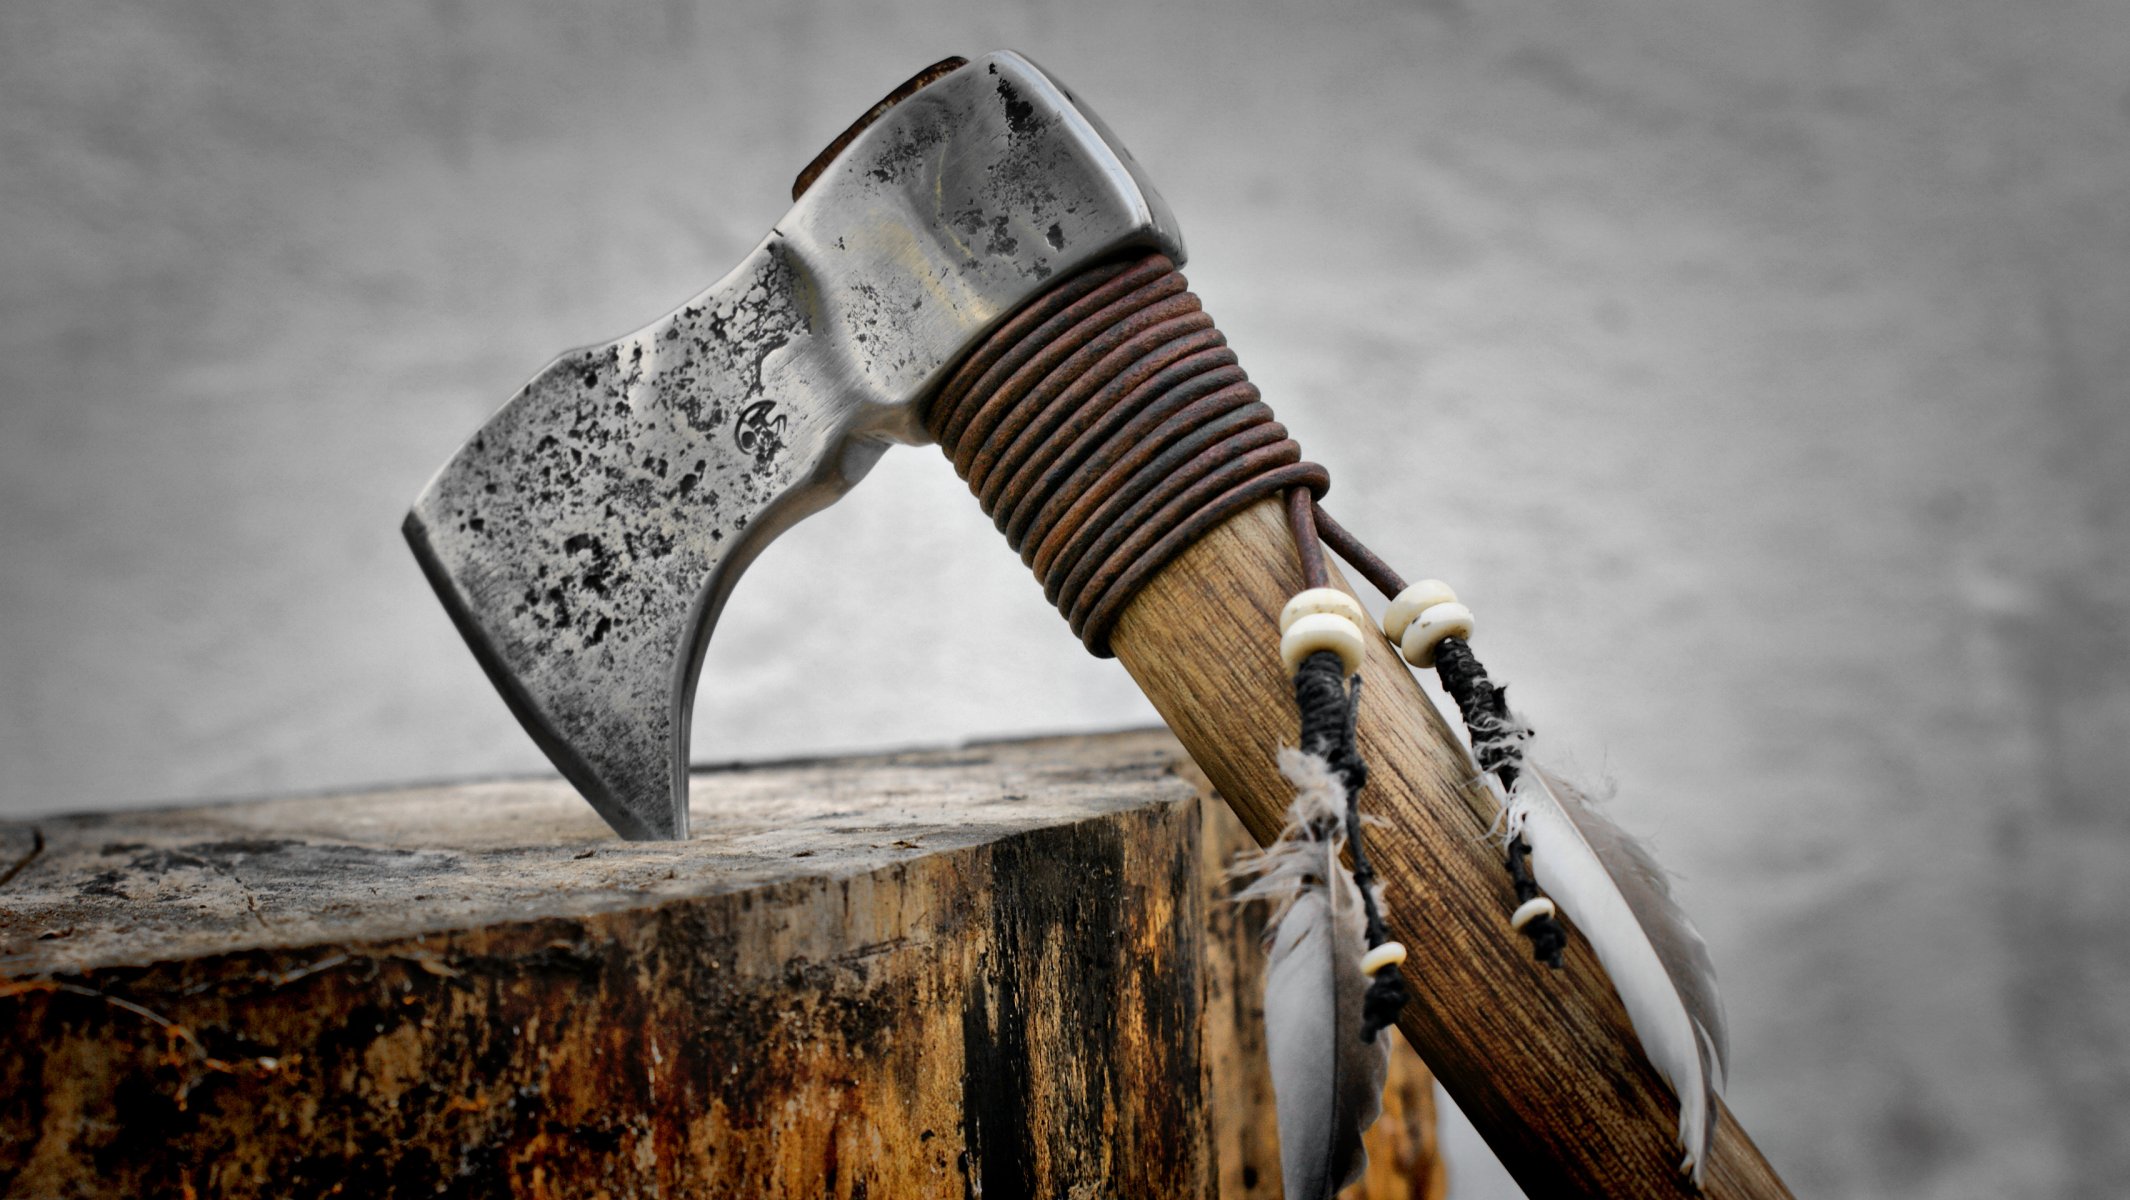 axe wallpaper,dane axe,hatchet,antique tool,axe,tomahawk